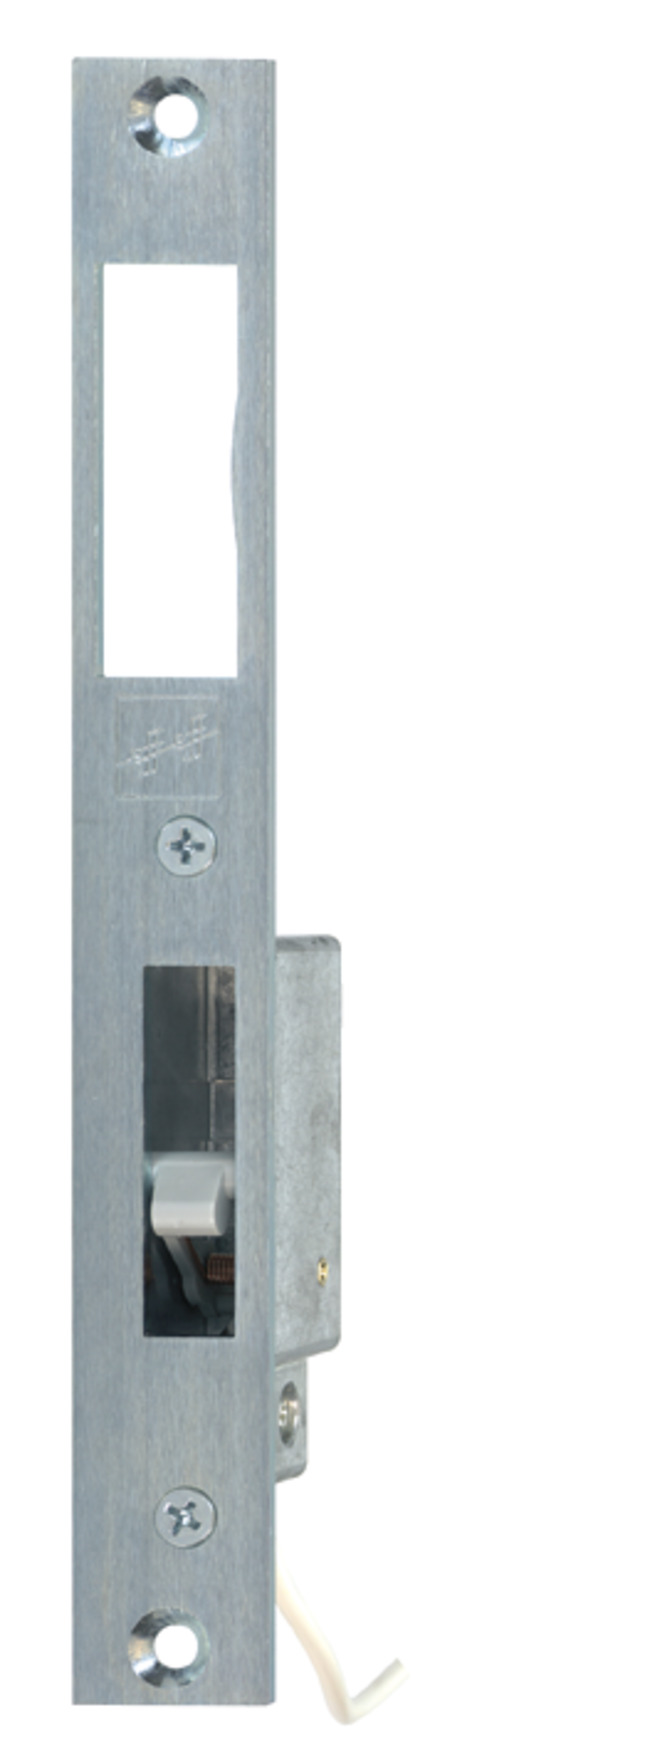 Riegelschaltkontakt Modell 875 mit Schließblech